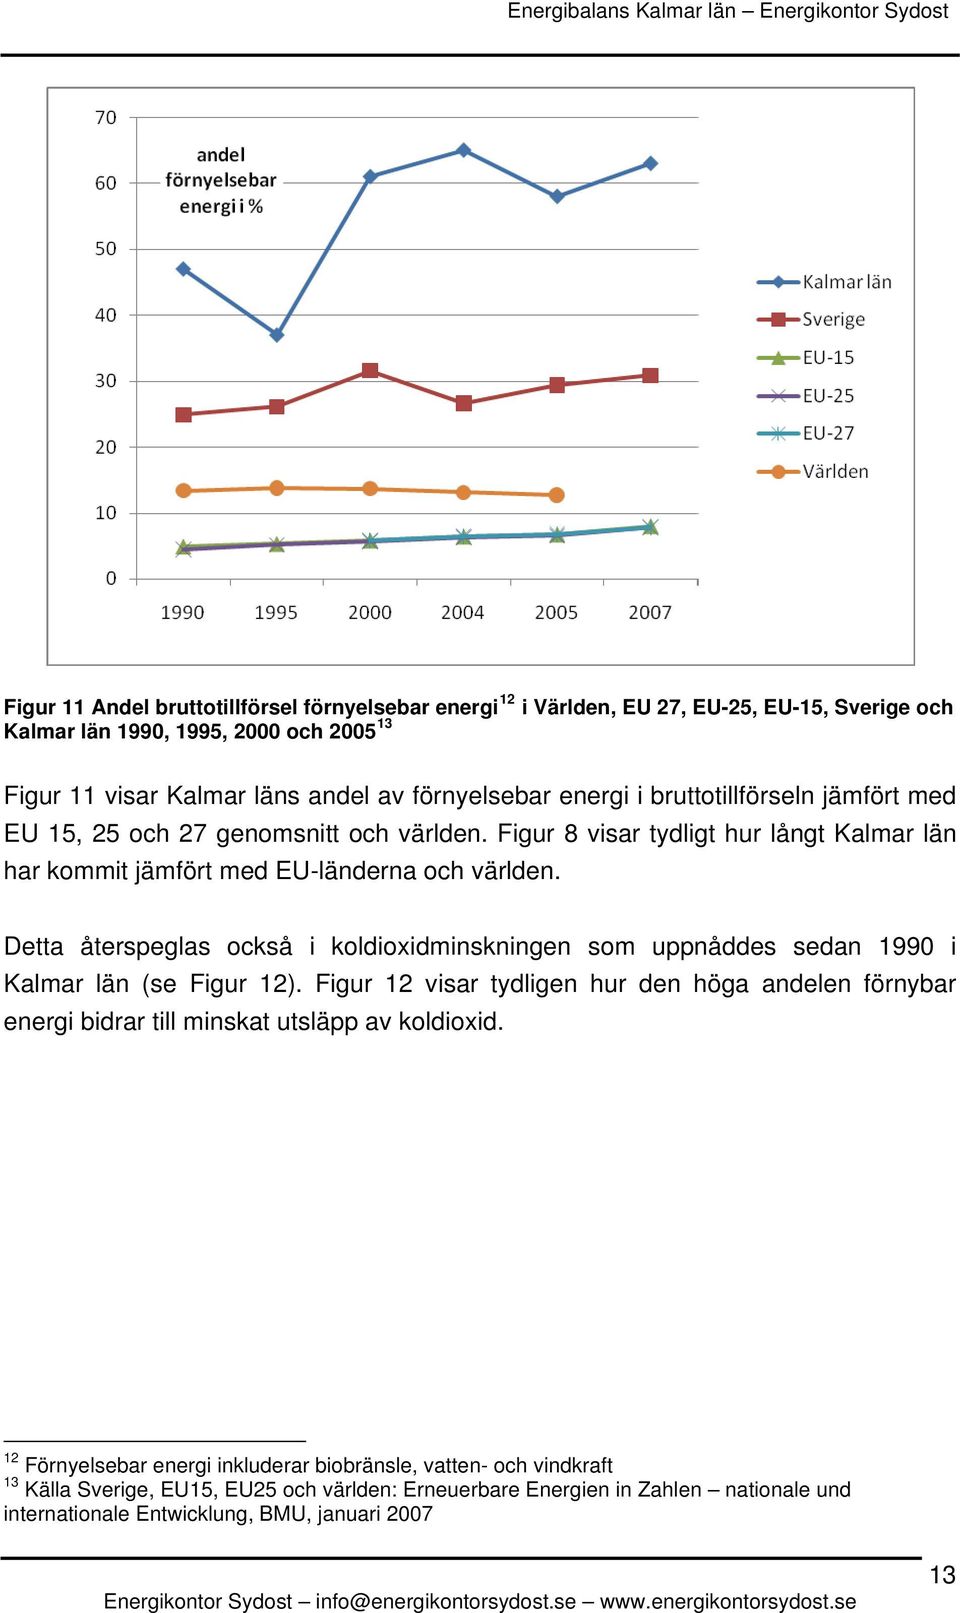 Detta återspeglas också i koldioxidminskningen som uppnåddes sedan 1990 i Kalmar län (se Figur 12).